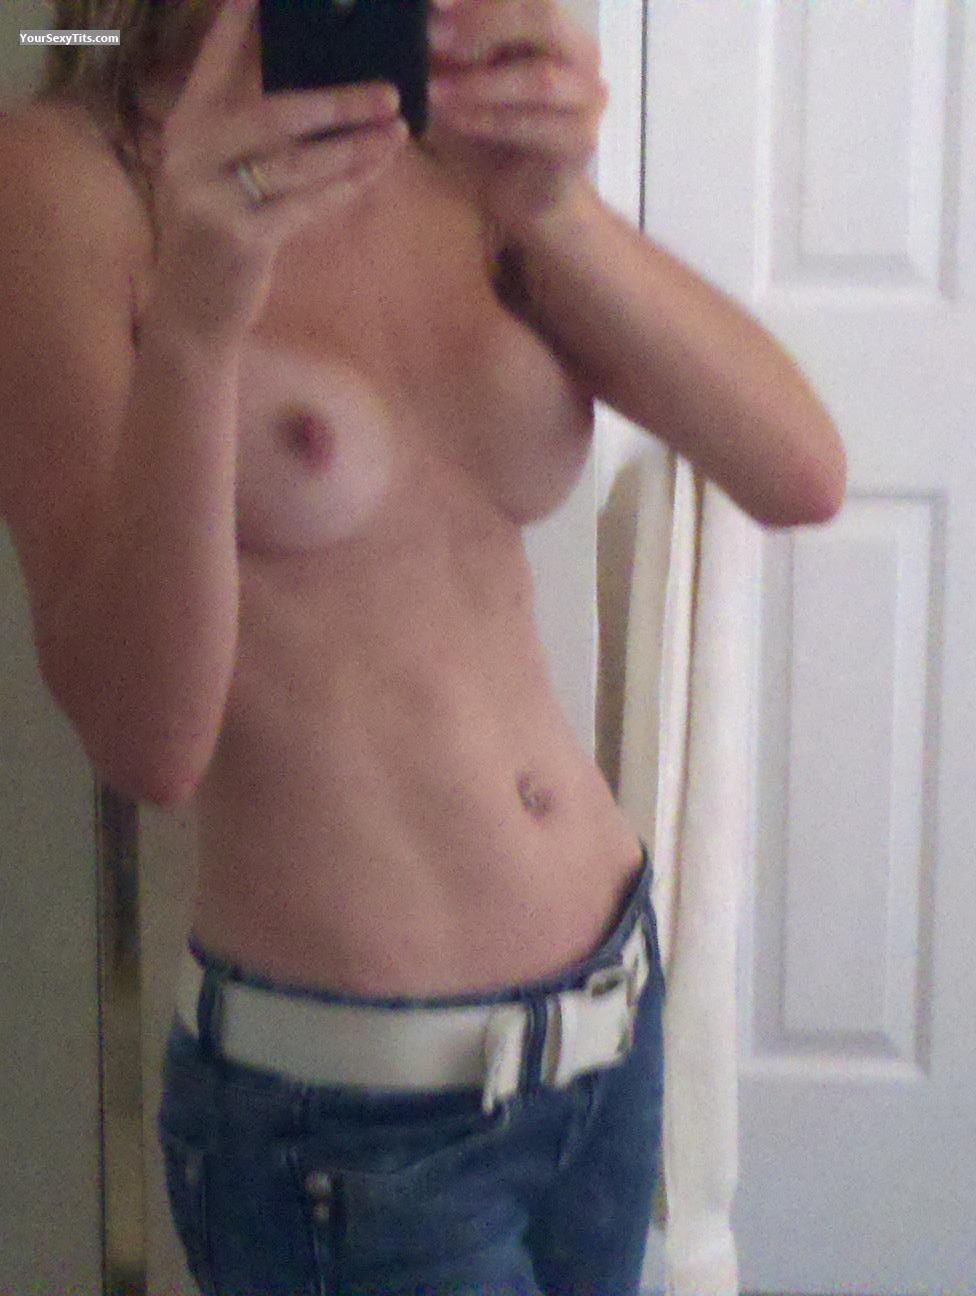 My Small Tits Selfie by Milfey